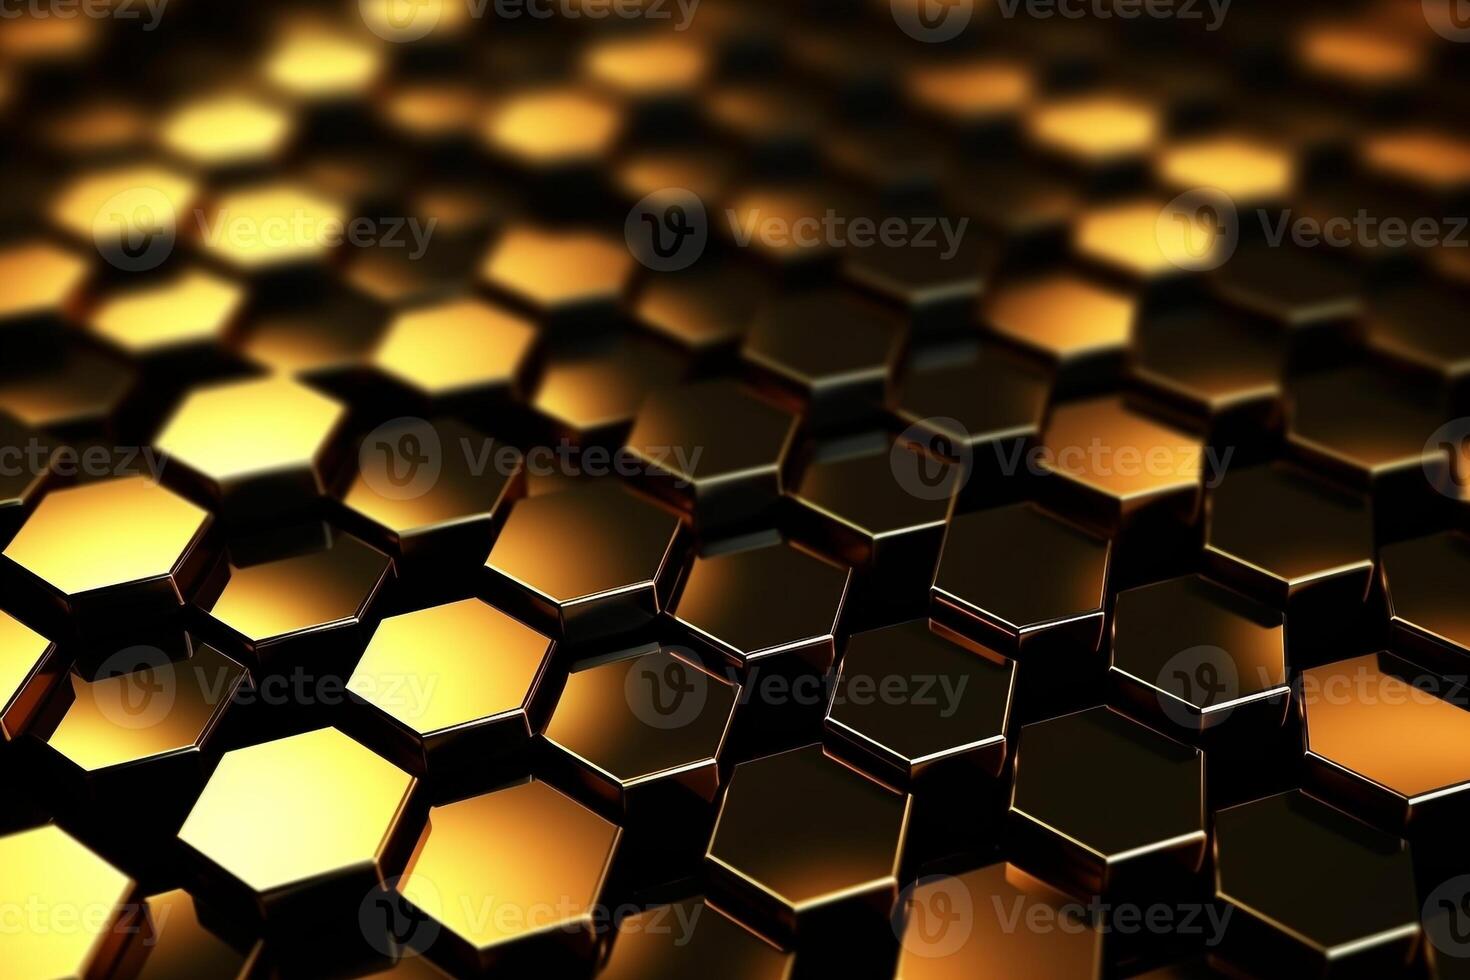 abstrakt guld bakgrund med hexagoner foto